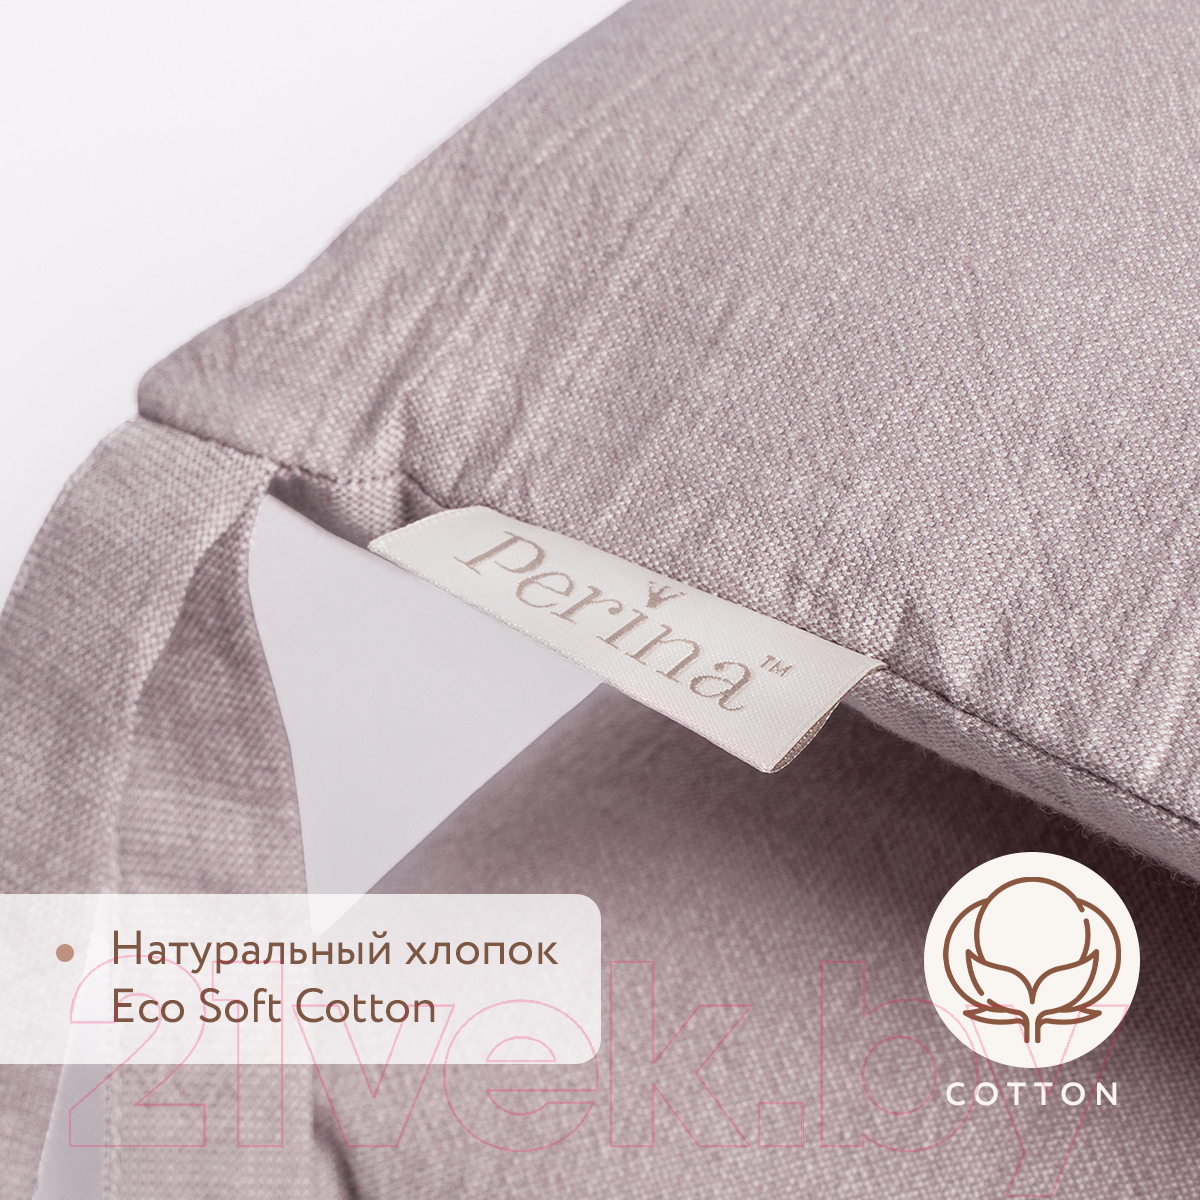 Бортик в кроватку Perina Soft Cotton / СК1/4-05.8